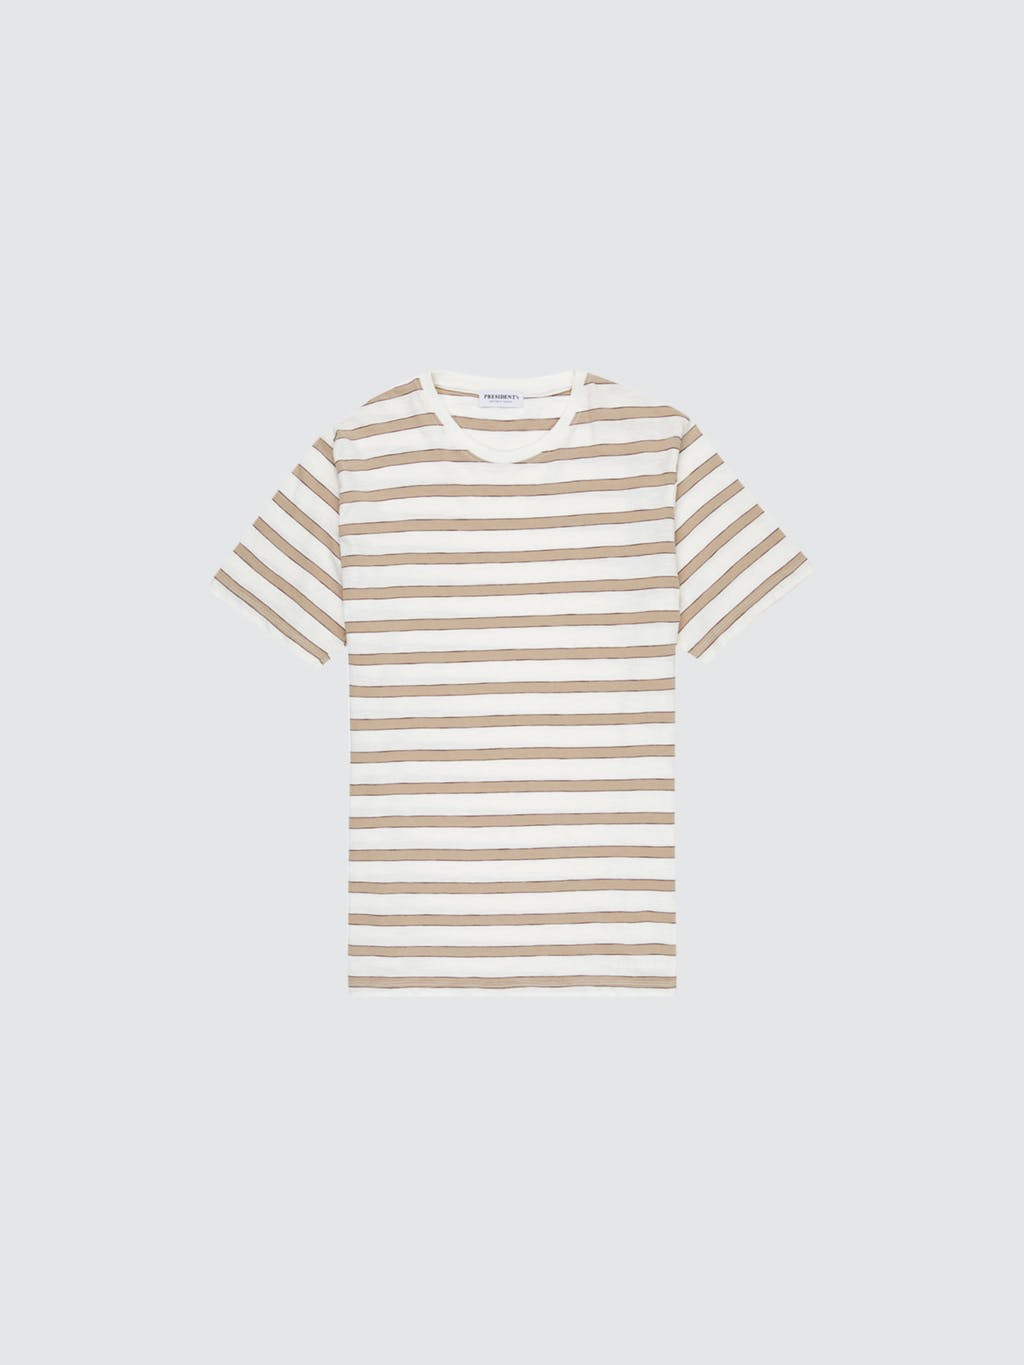 Short Sleeve Jersey Stripe T-Shirt